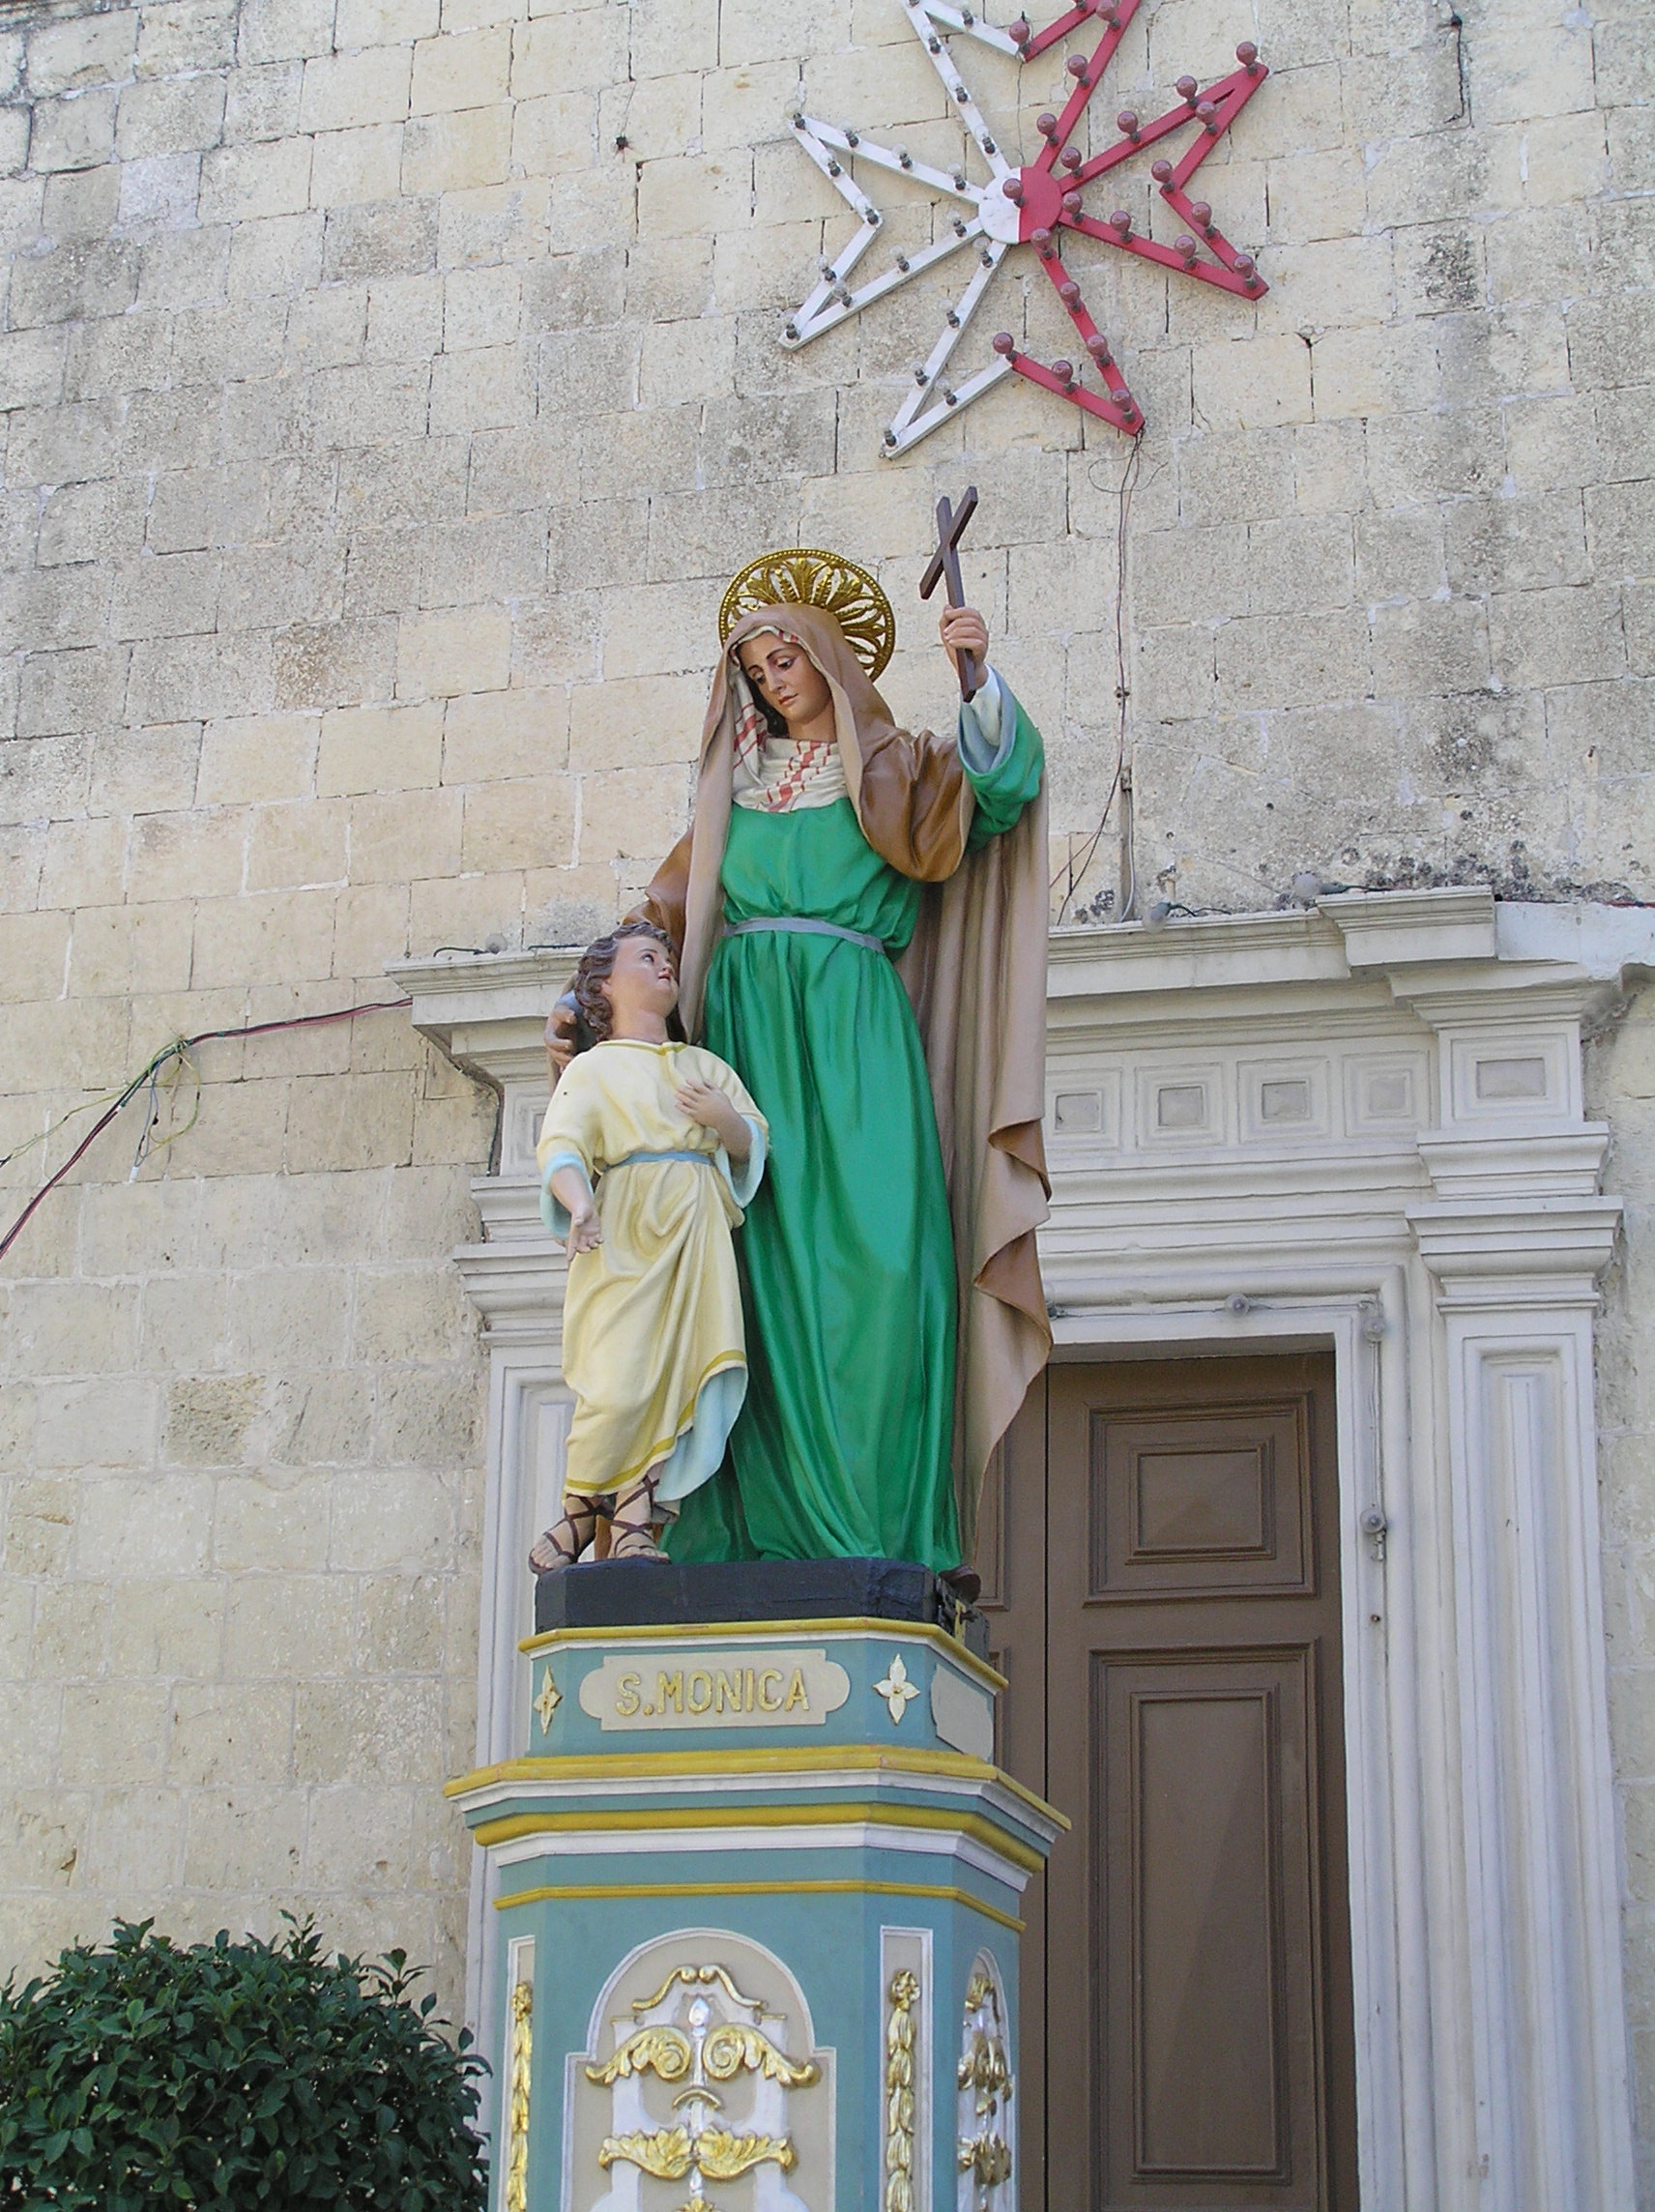 sculpture rabat mdina malta island